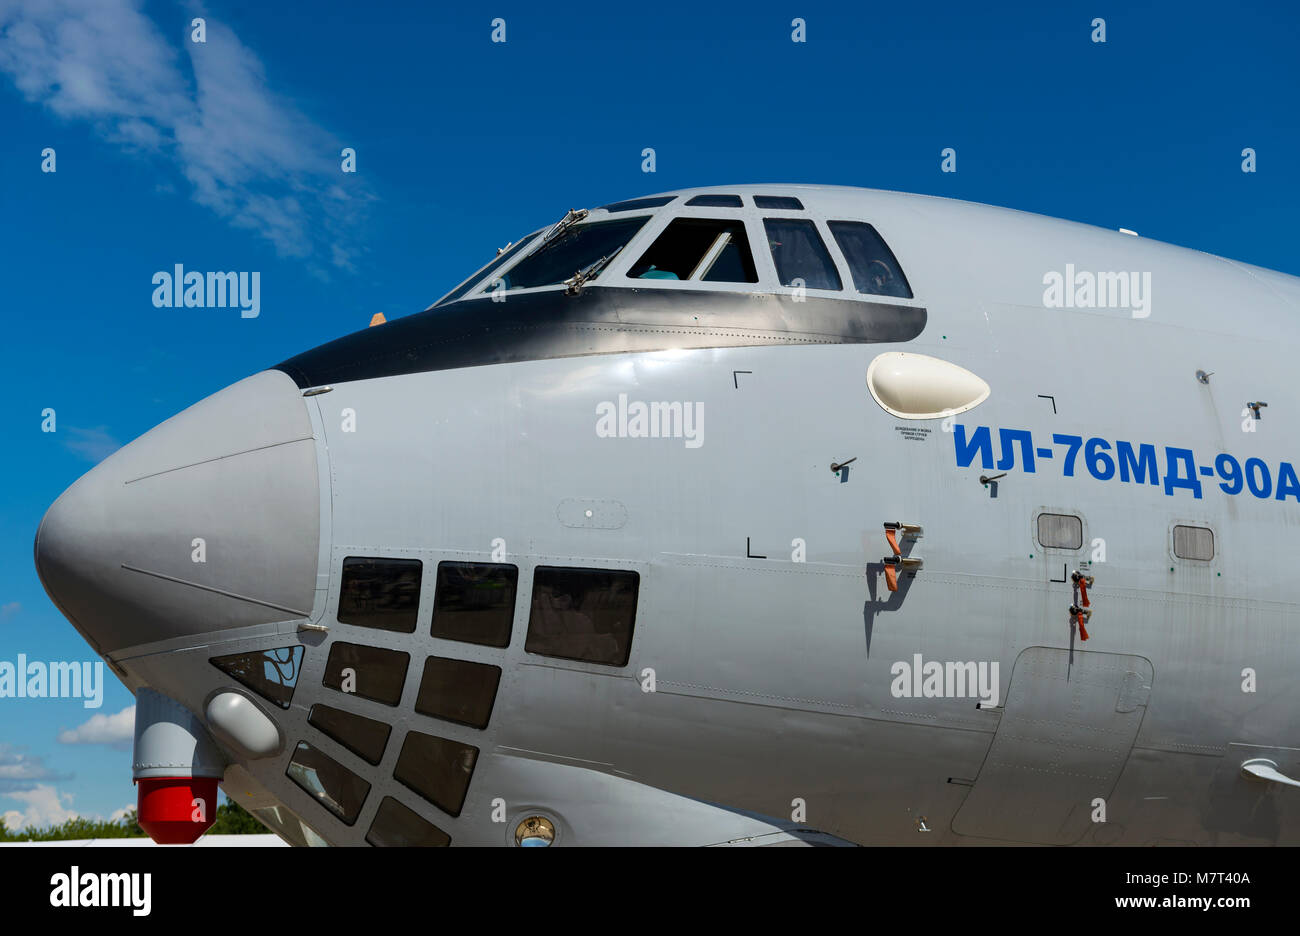 Naso di Il-76 velivoli cargo, cielo blu con nuvole bianche Foto Stock